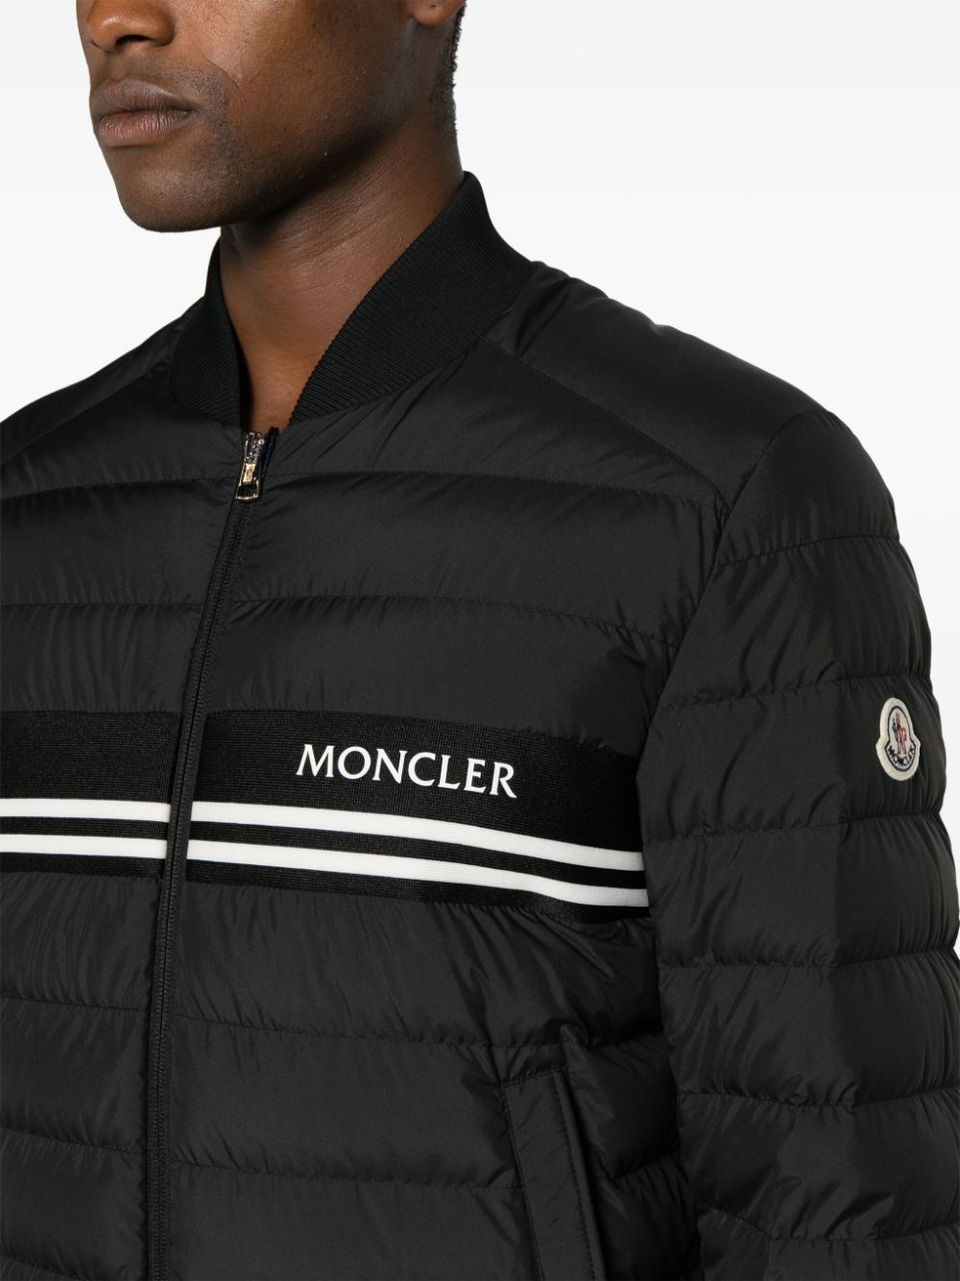 'Mounier' down jacket